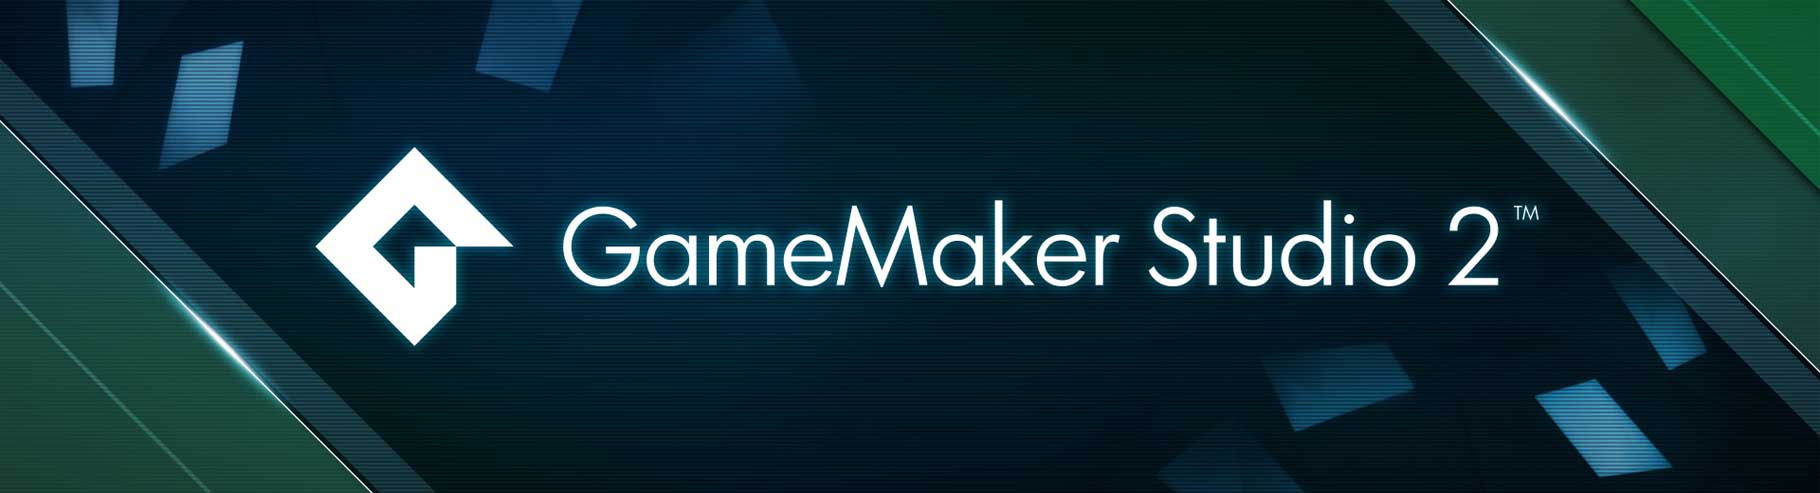 Các tính năng chính của GameMaker Studio 2